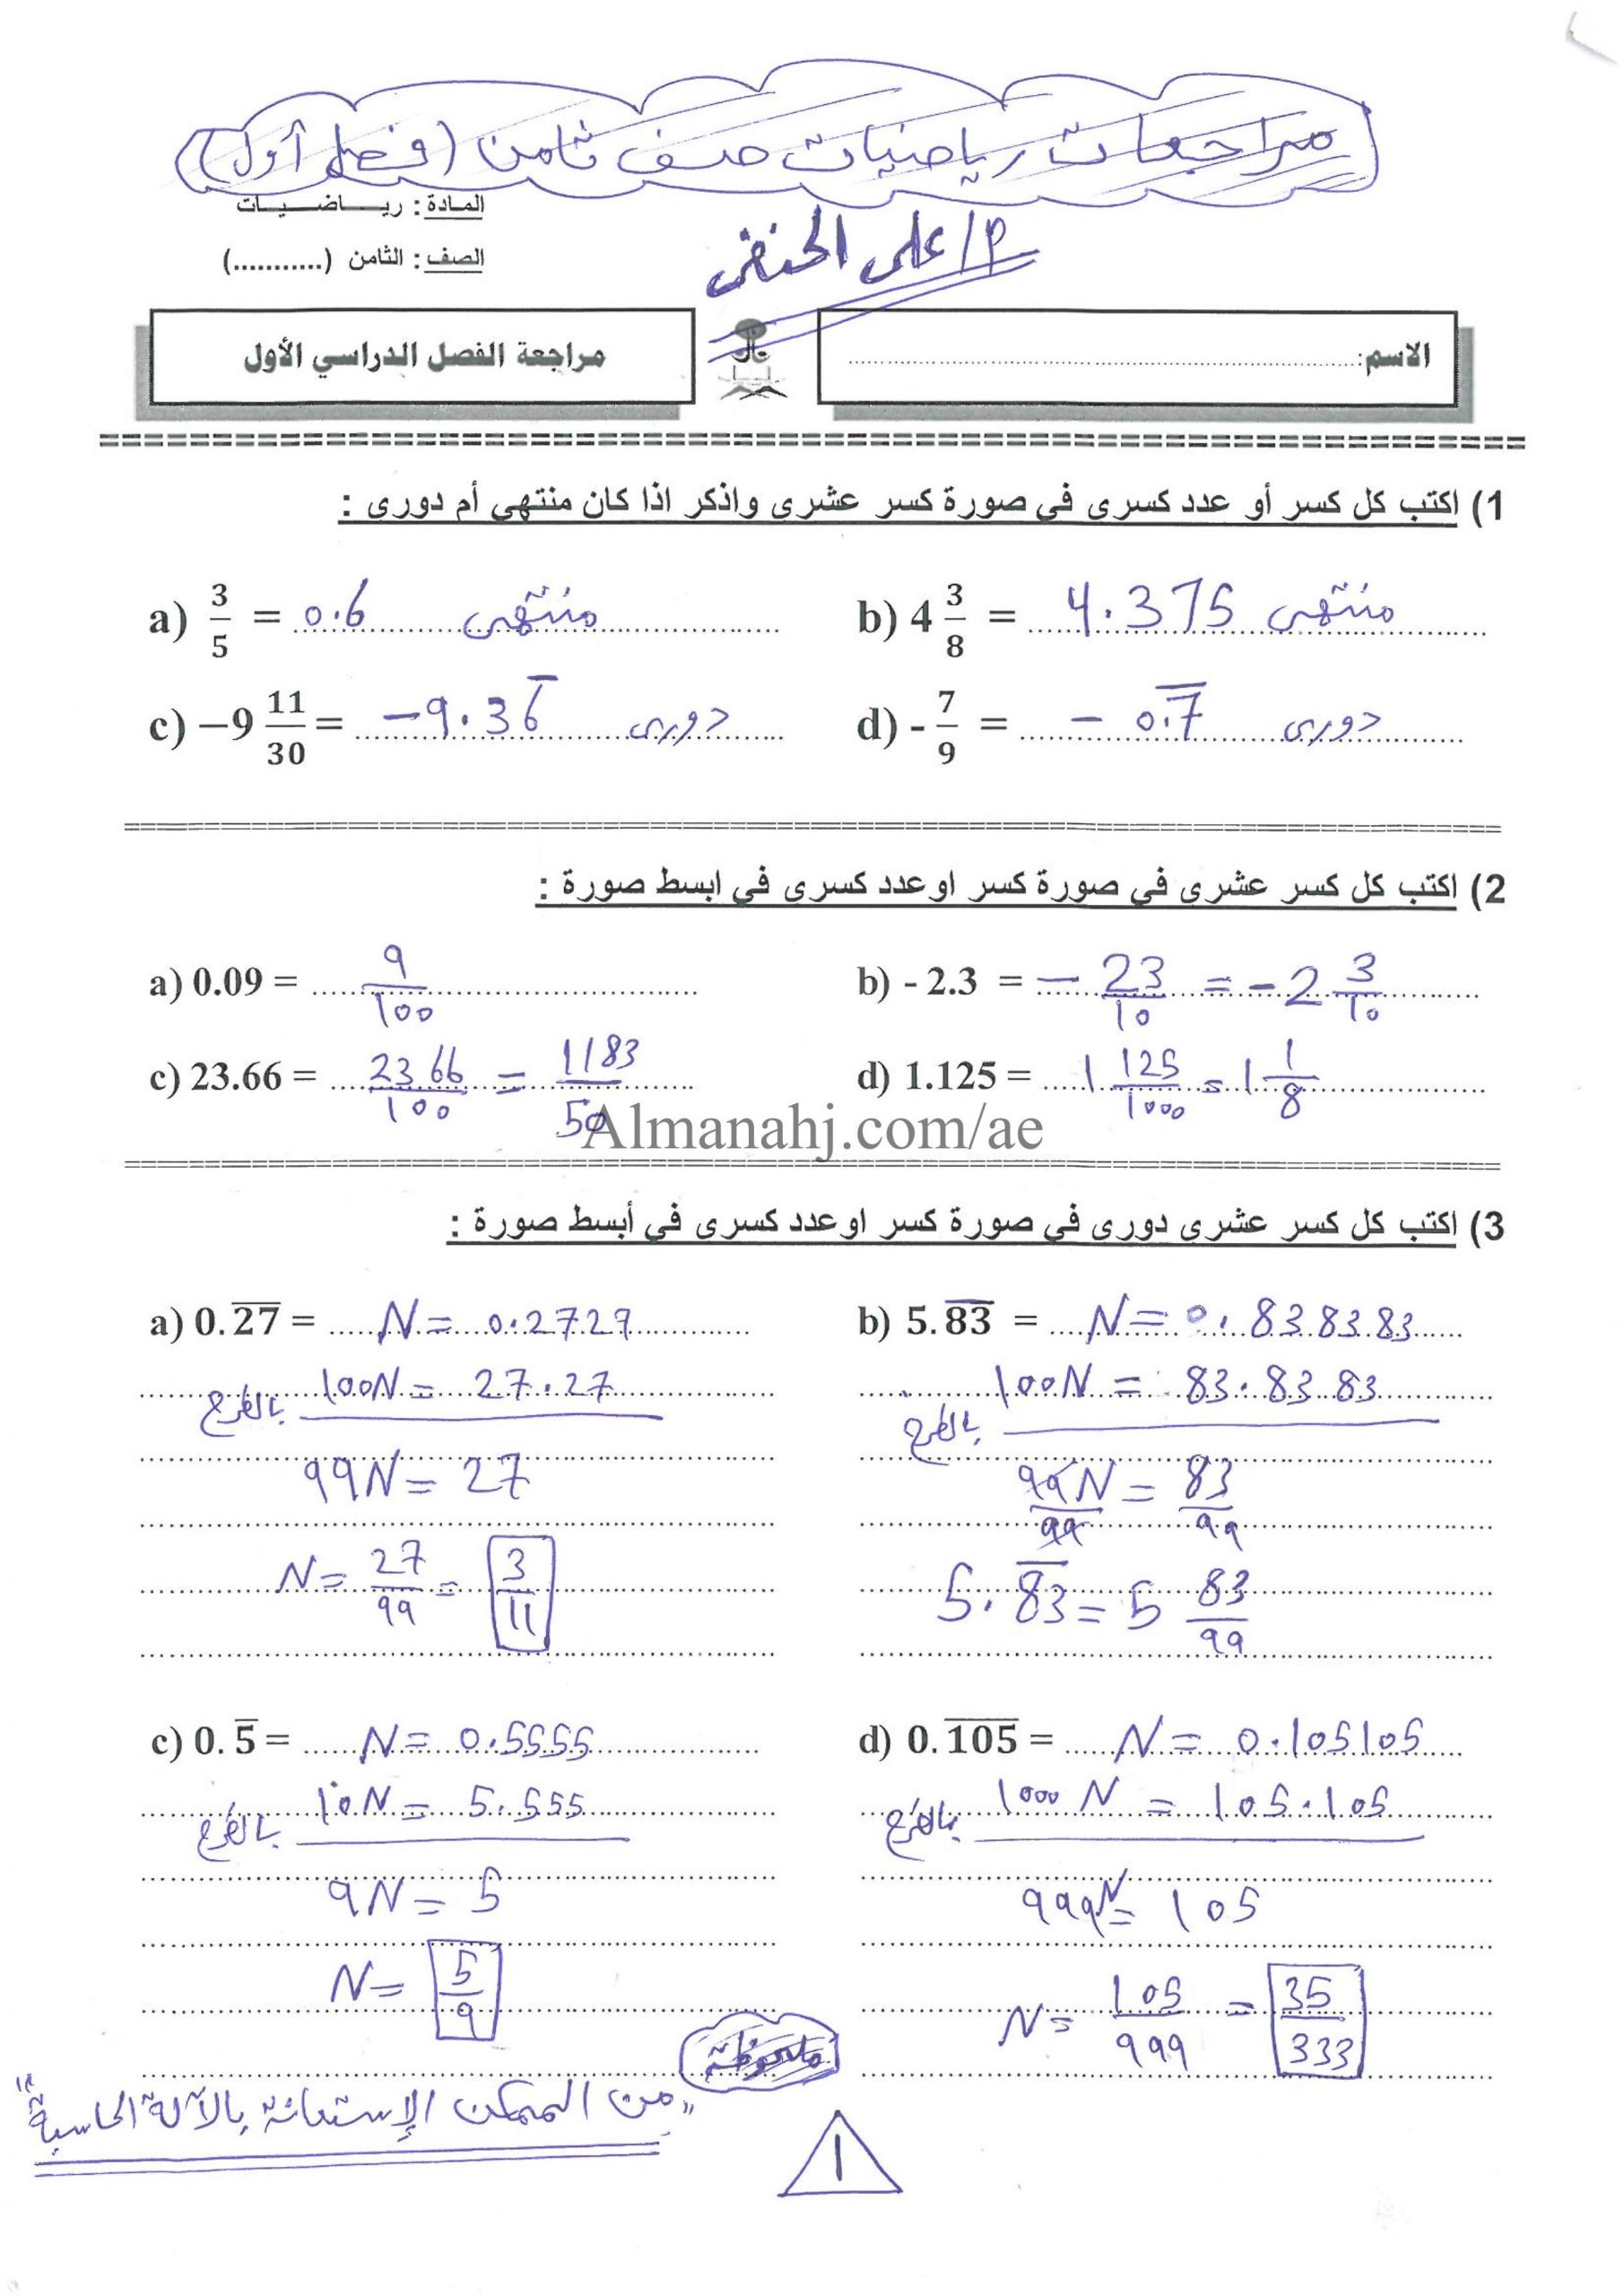 حل اوراق عمل مراجعة الصف الثامن مادة الرياضيات المتكاملة 